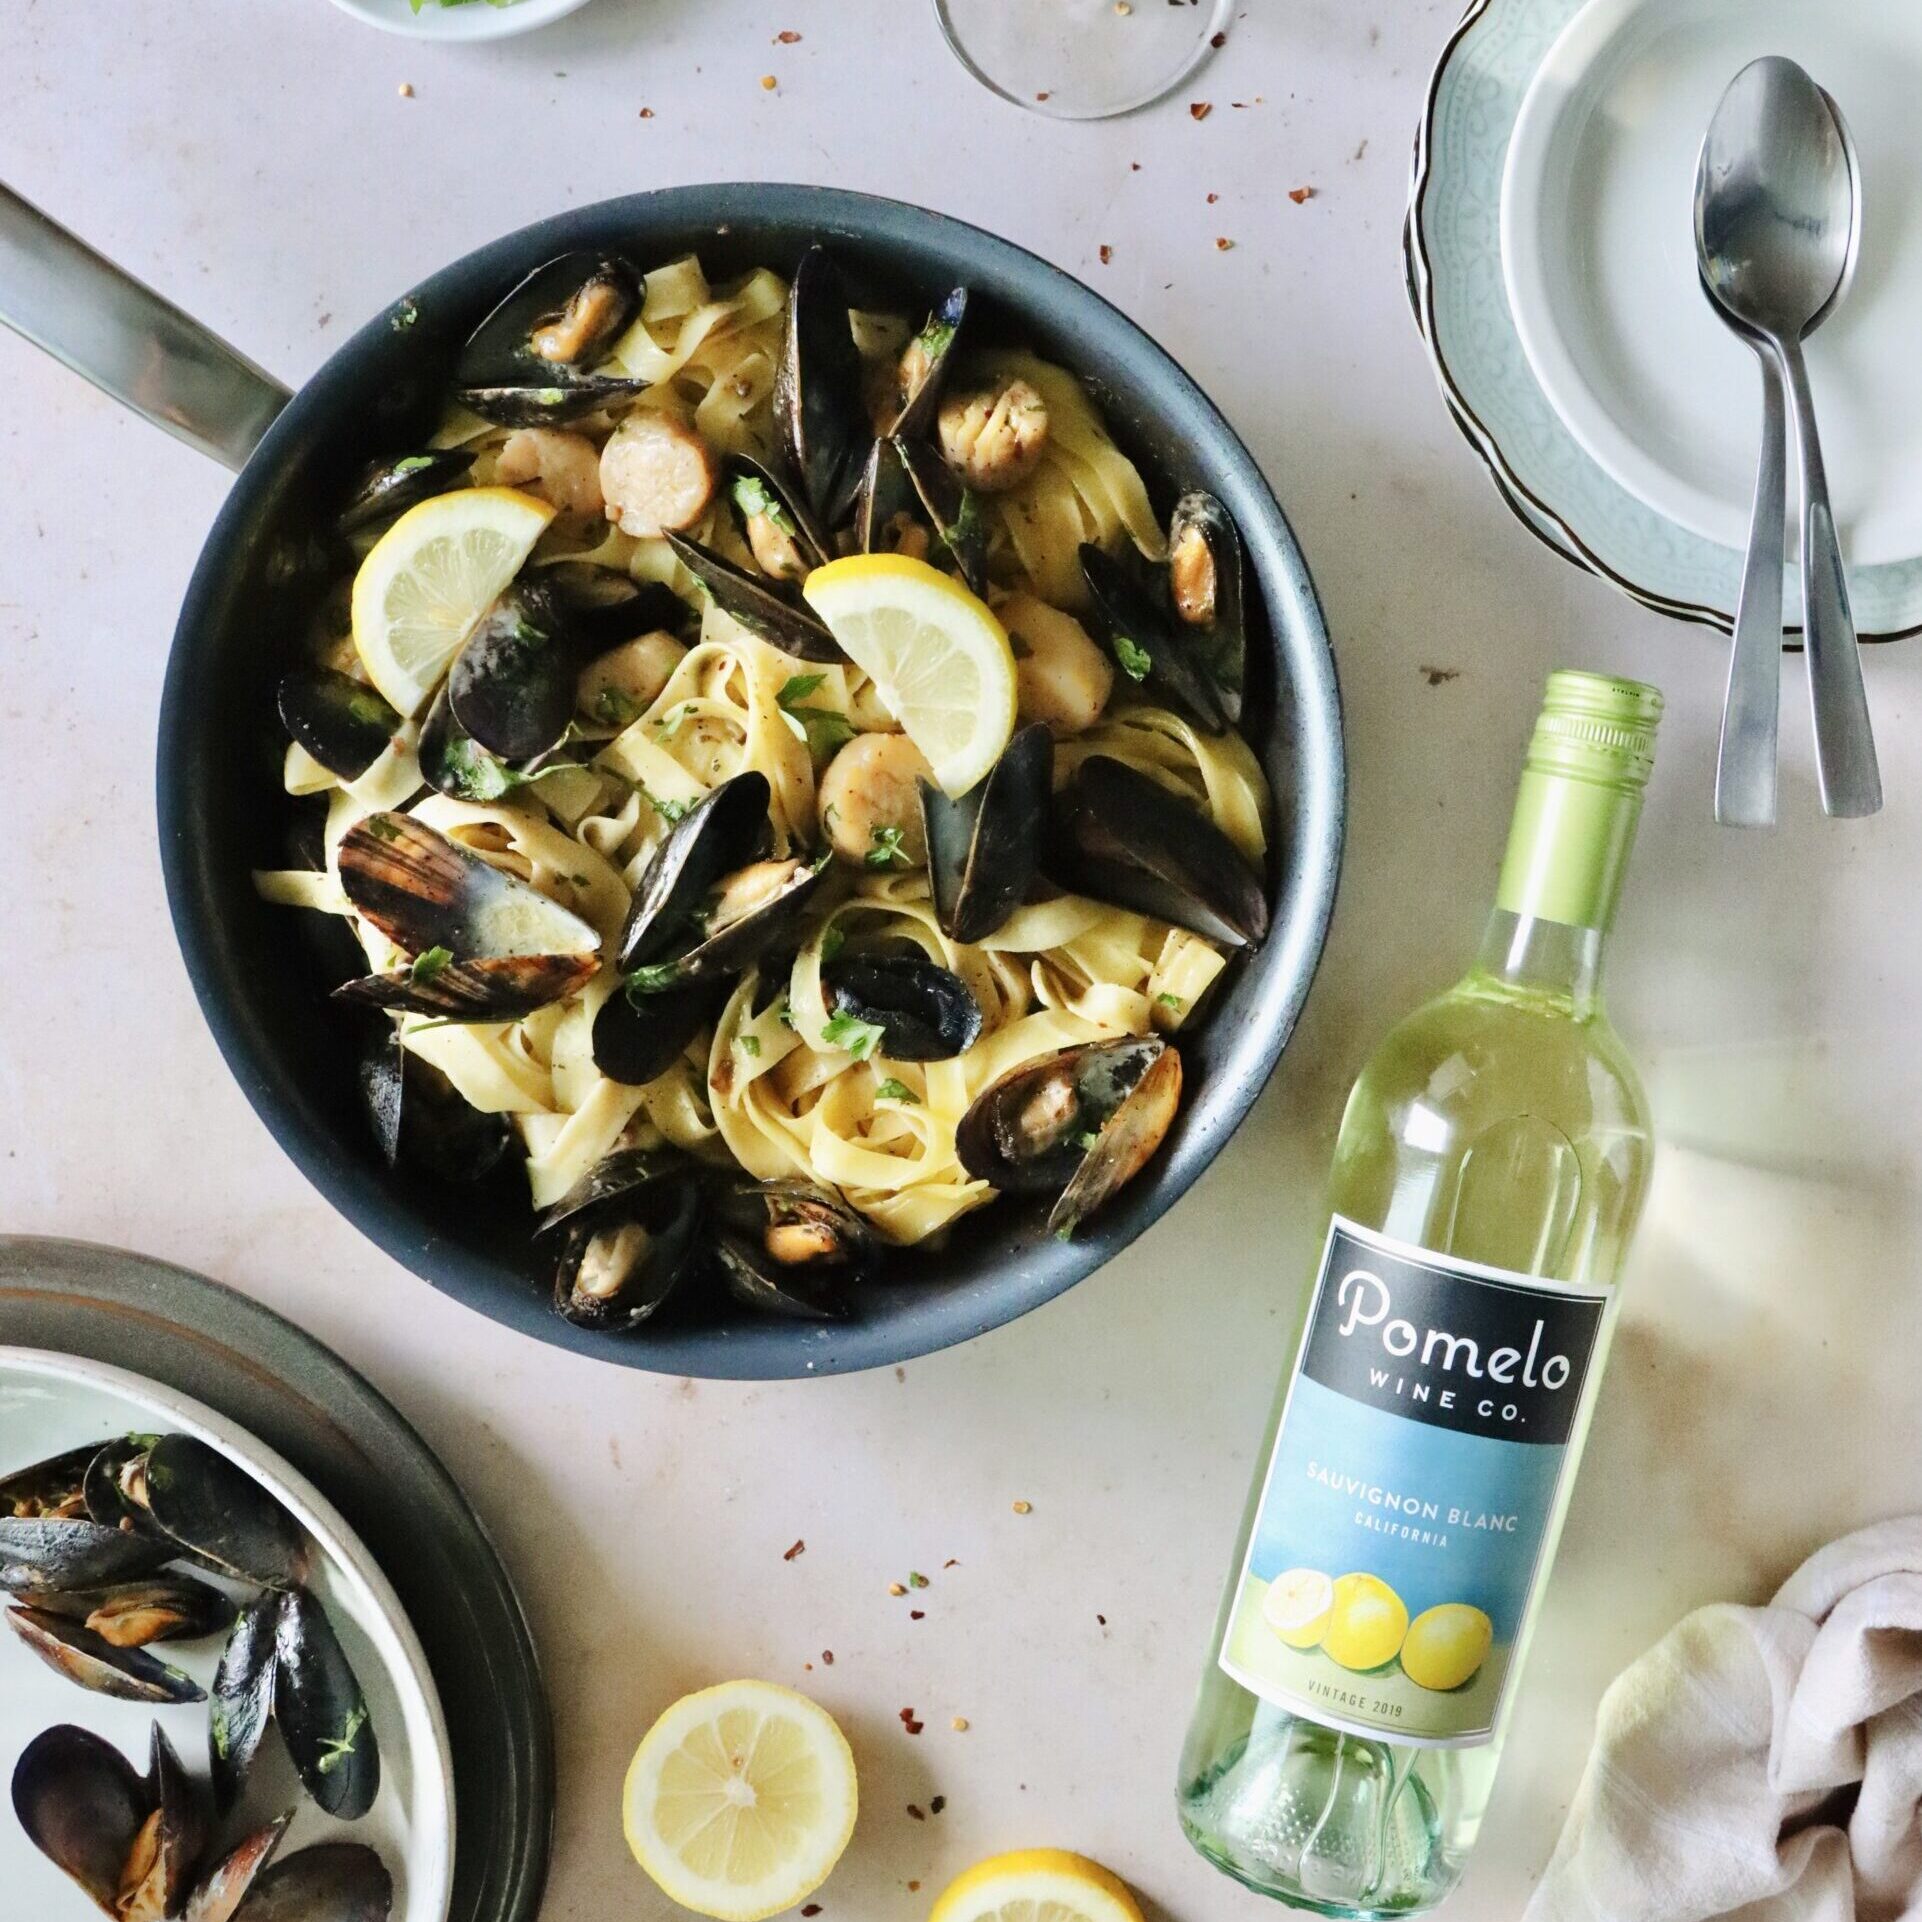 pomelo wines, sauvignon blanc, white wine, white wine recipe, white wine recipes, mussels, mussel recipe